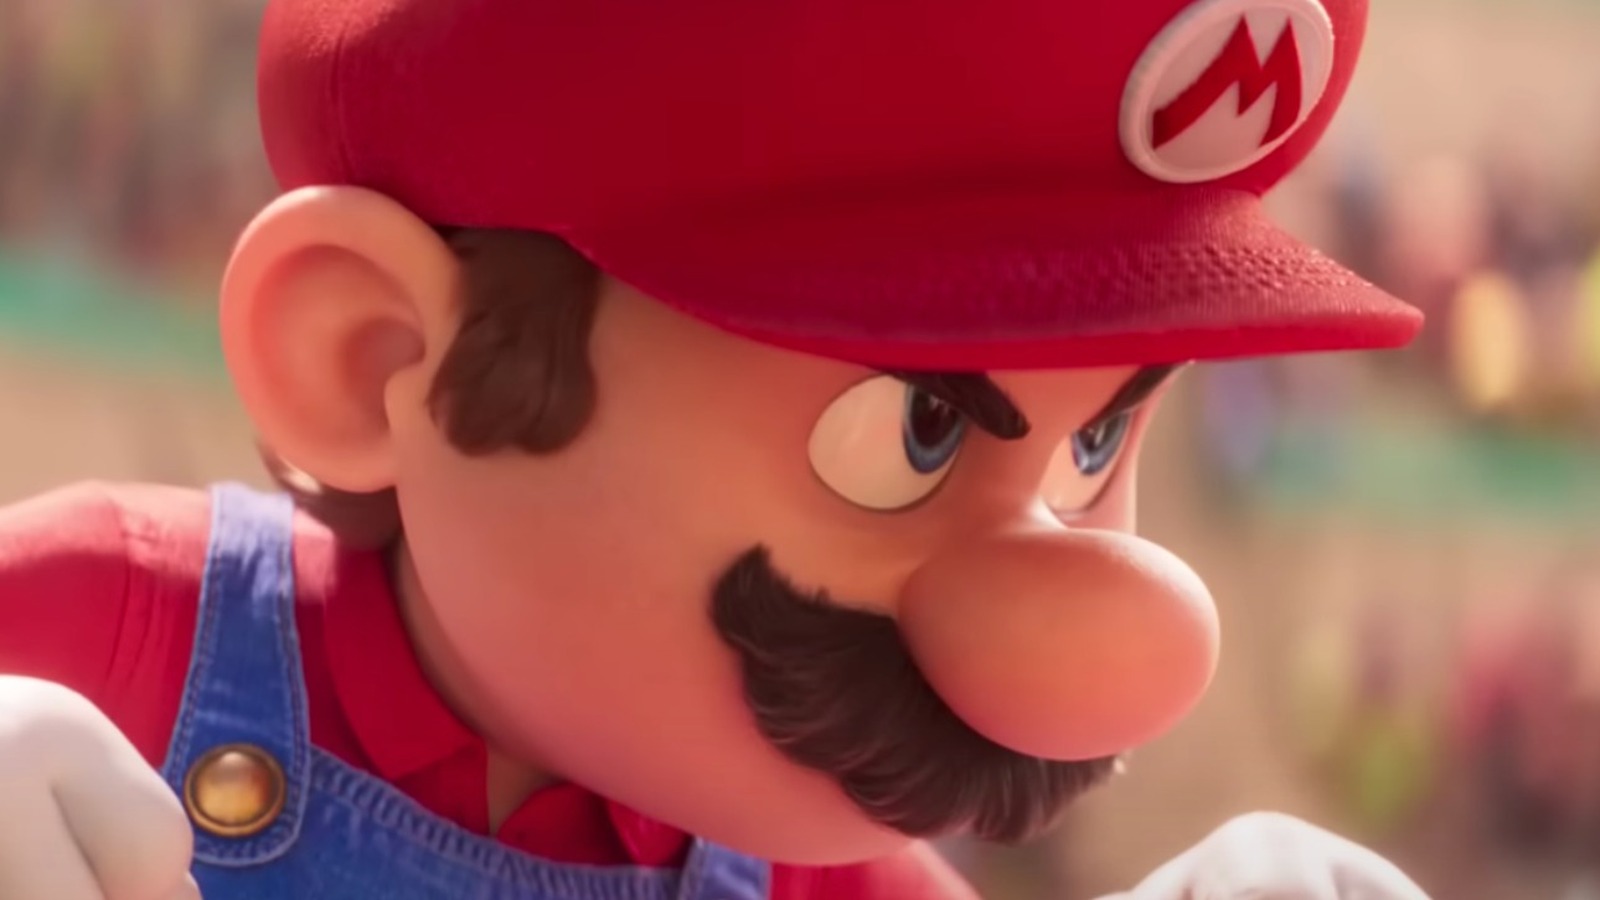 Super Mario World: Luigi is Villain 